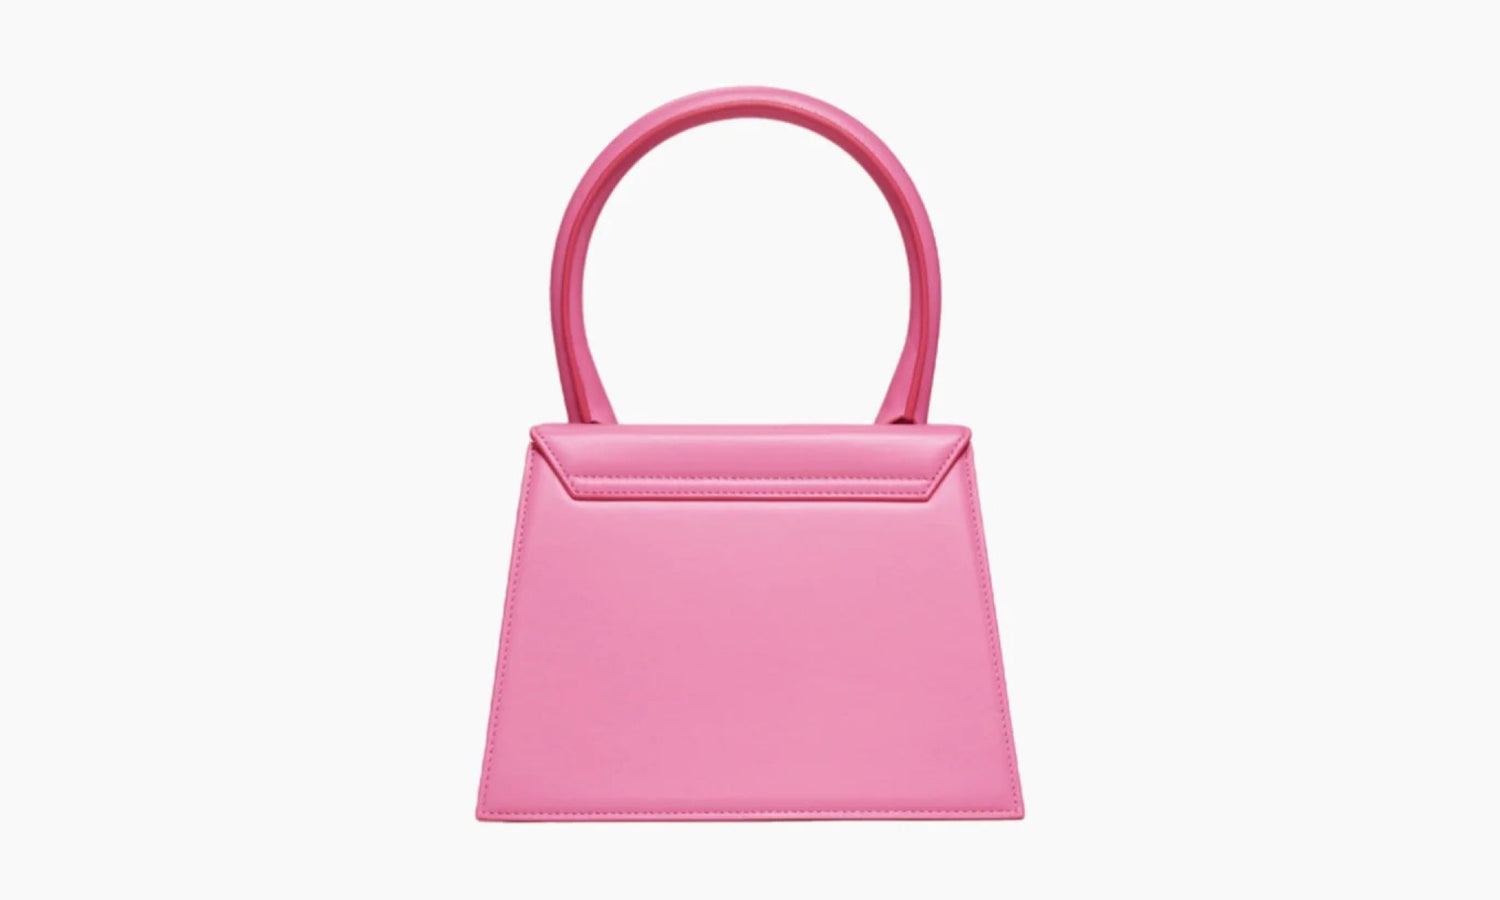 Jacquemus Le Grand Chiquito Bag «Pink» - 213BA0033060430 | Grailshop